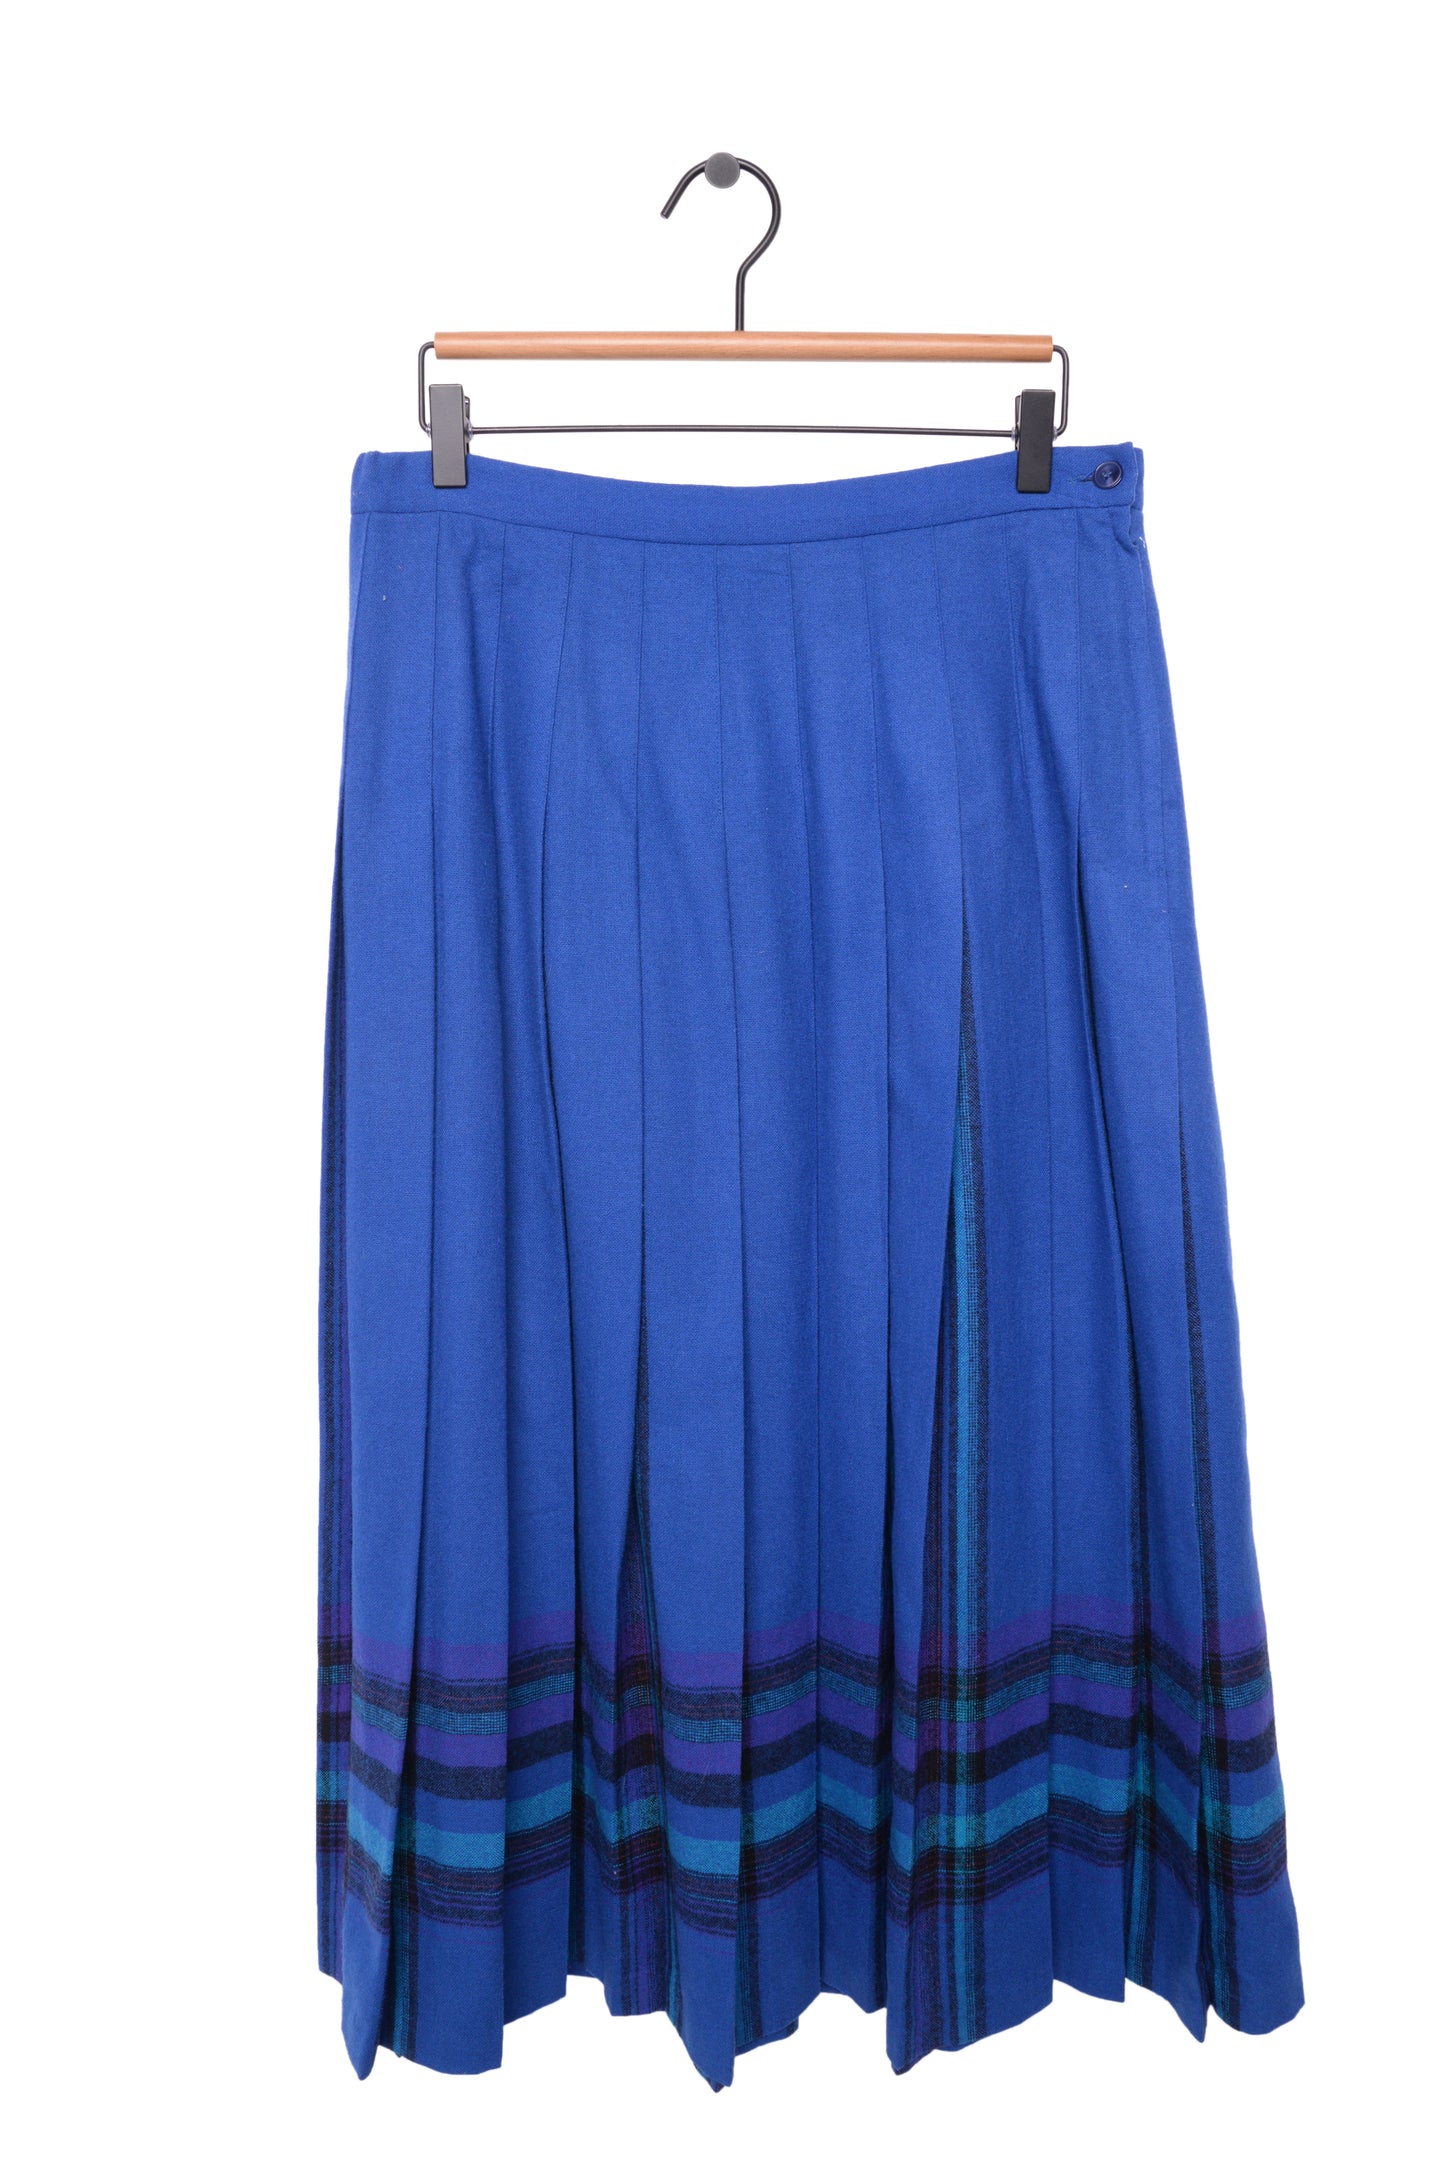 Pleated Wool Midi Skirt